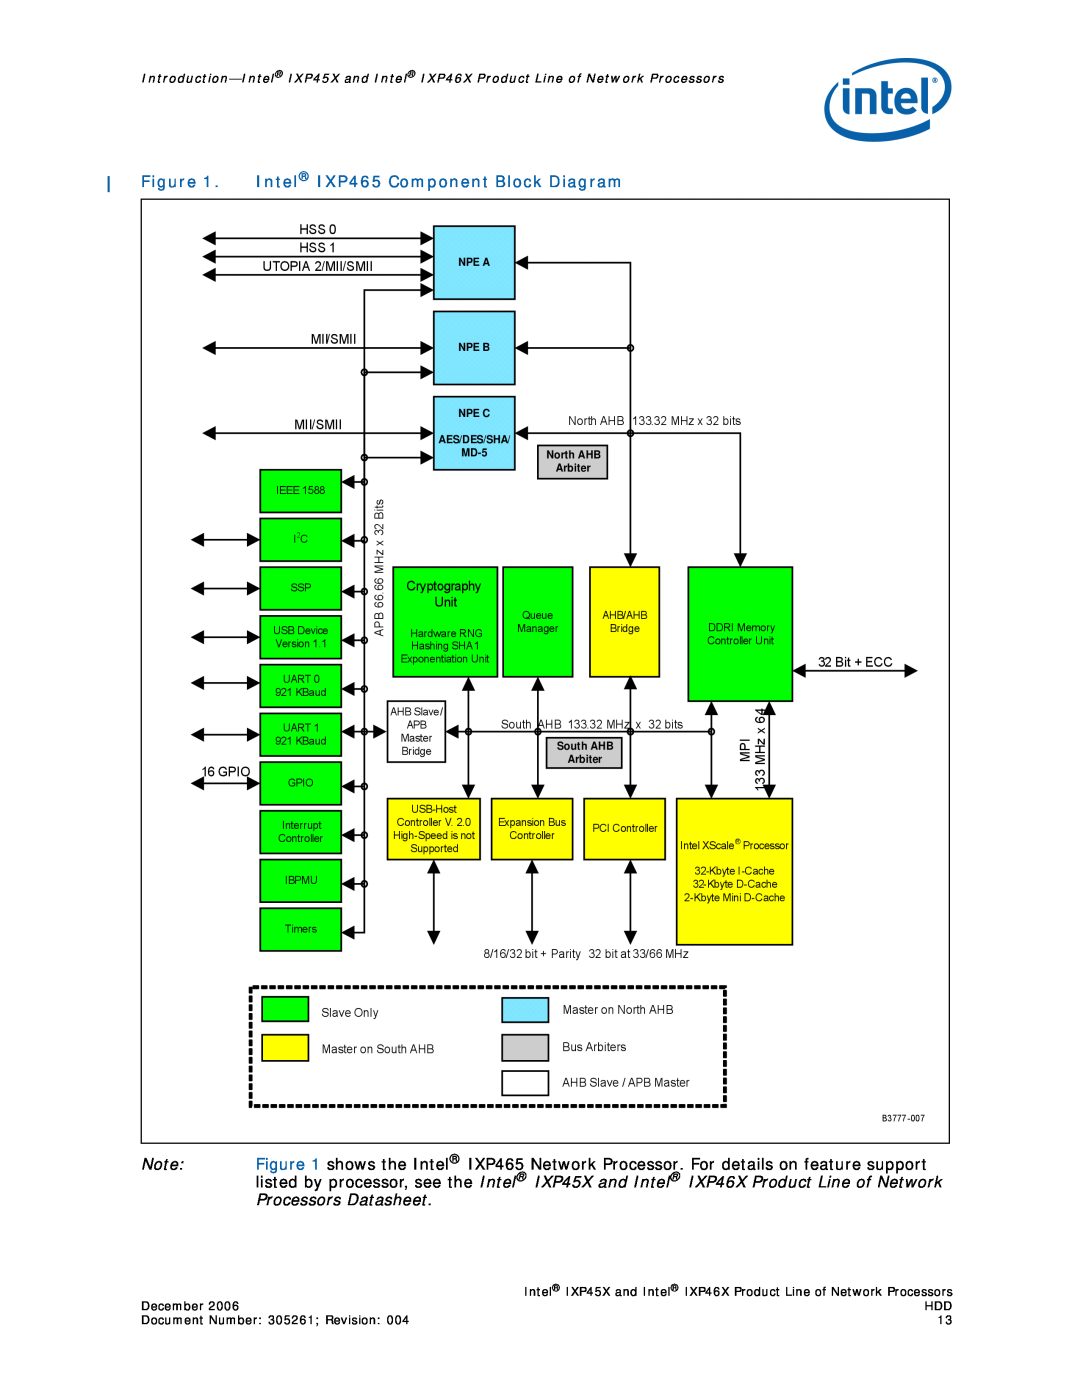 Intel IXP45X, IXP46X manual Intel IXP465 Component Block Diagram, Mii/Smii, Cryptography, Unit, Bit + ECC, Gpio 